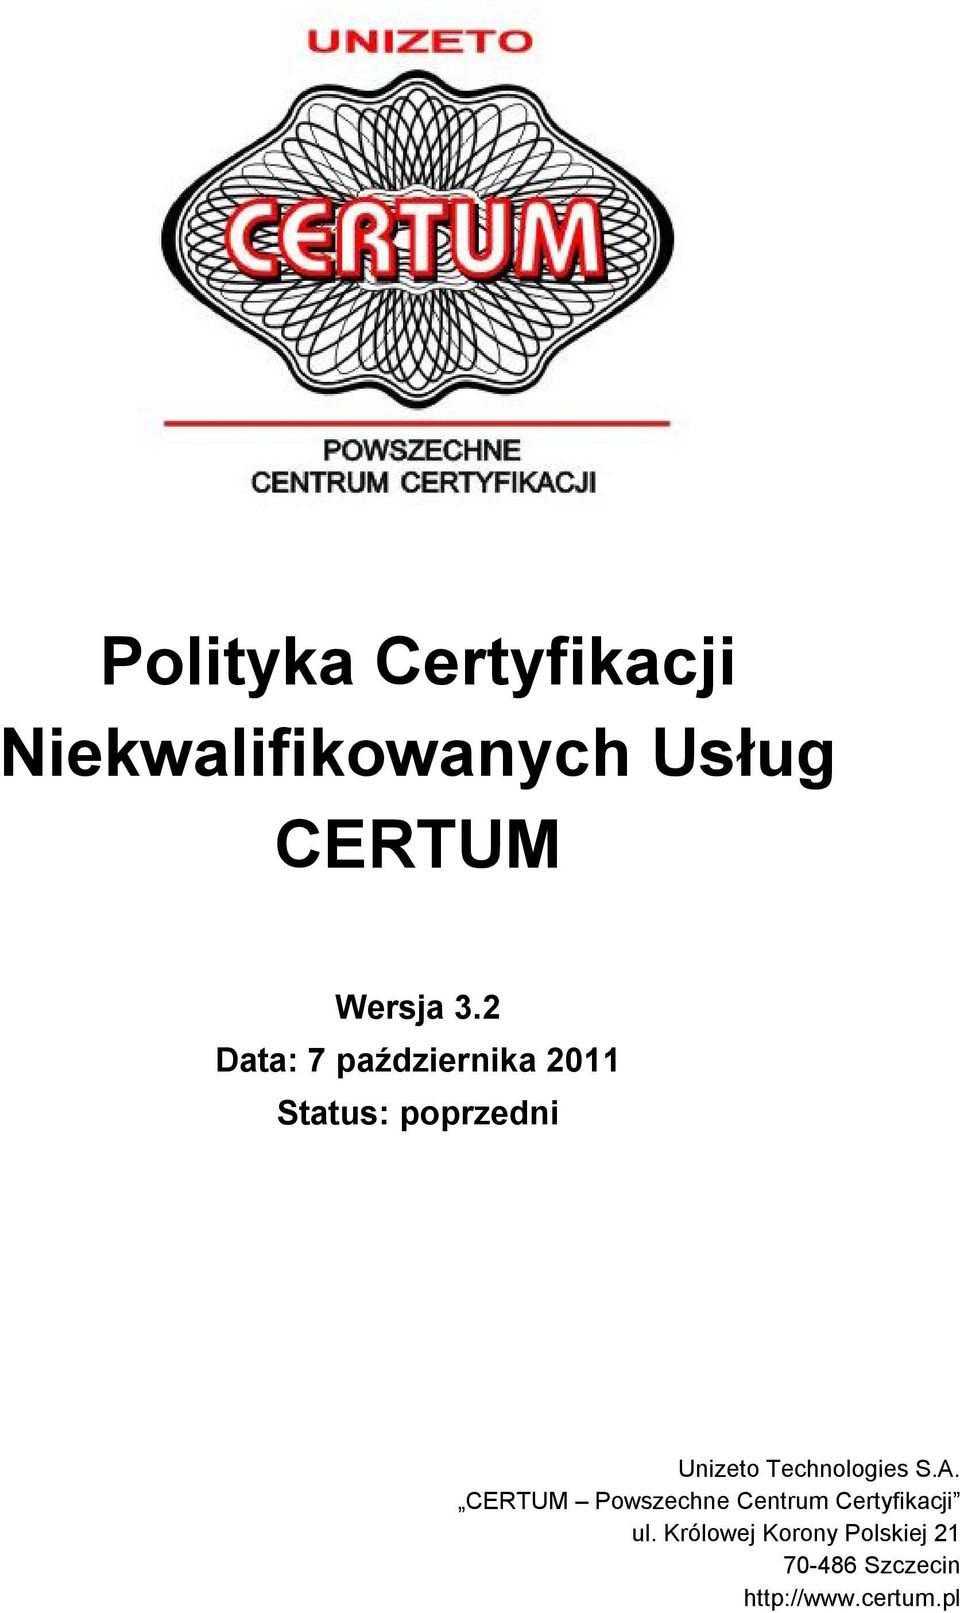 Technologies S.A. CERTUM Powszechne Centrum Certyfikacji ul.